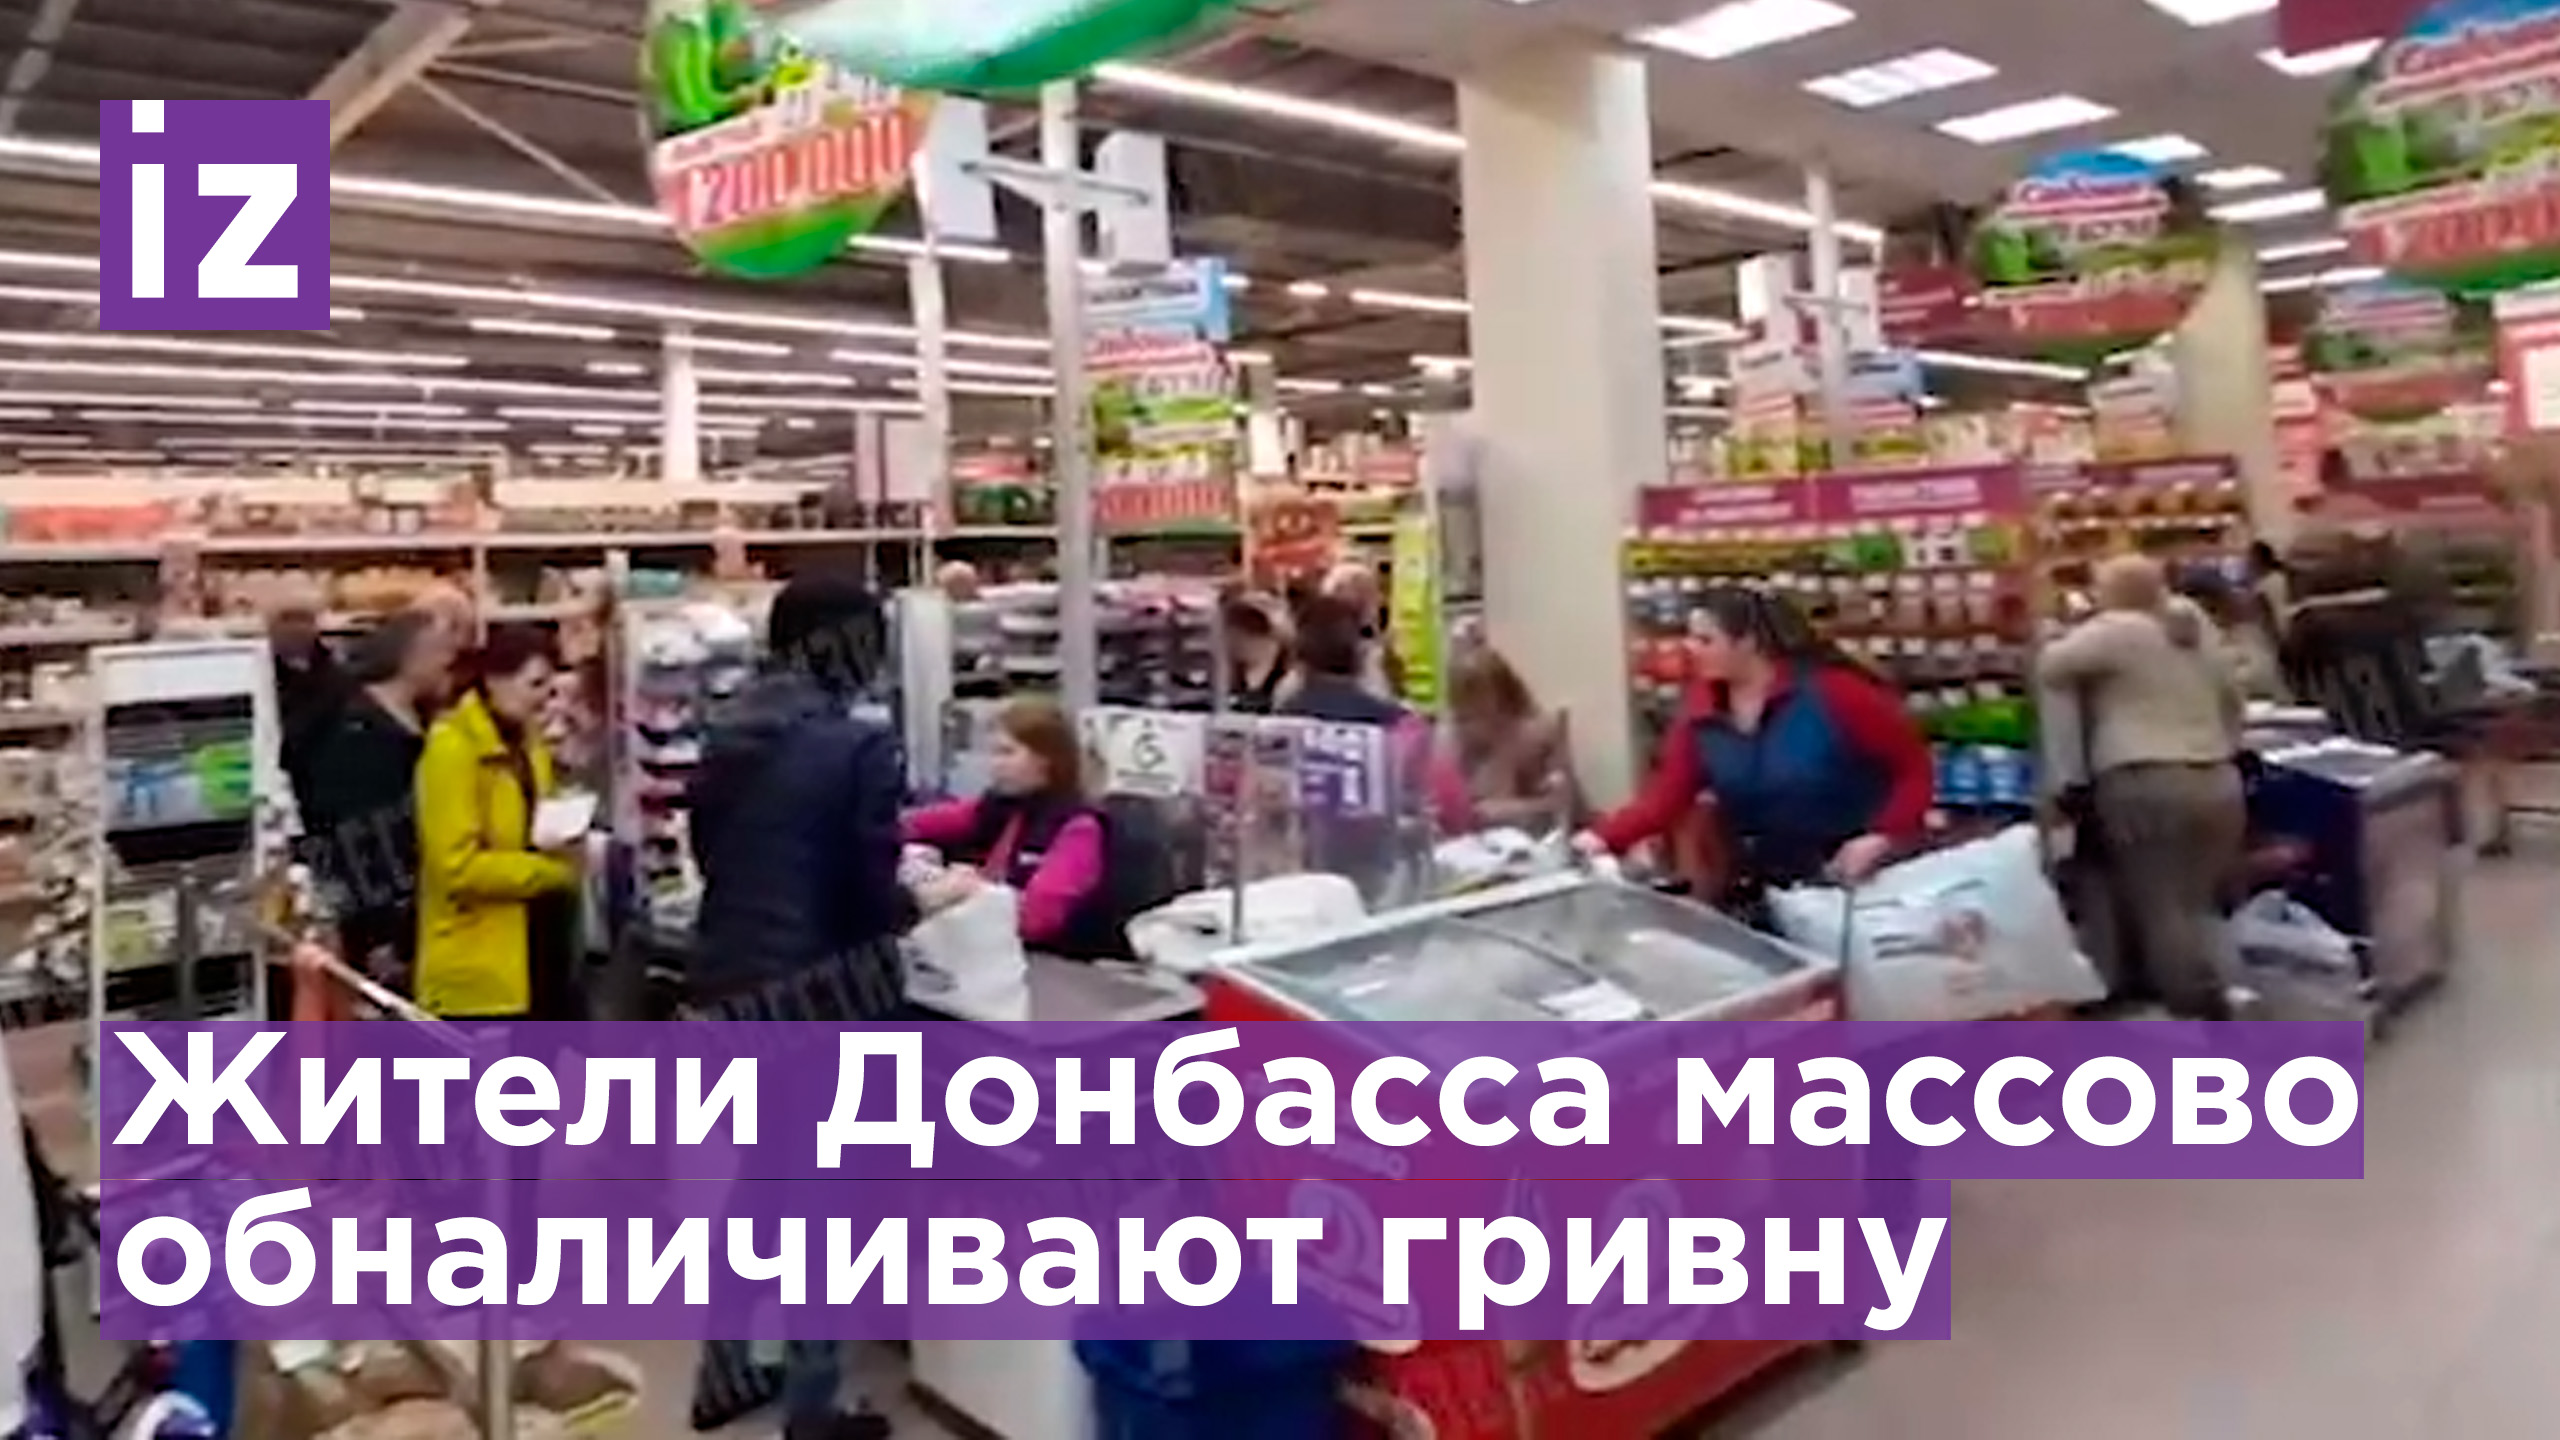 В Донбассе люди массово избавляются от гривны в магазинах / Известия